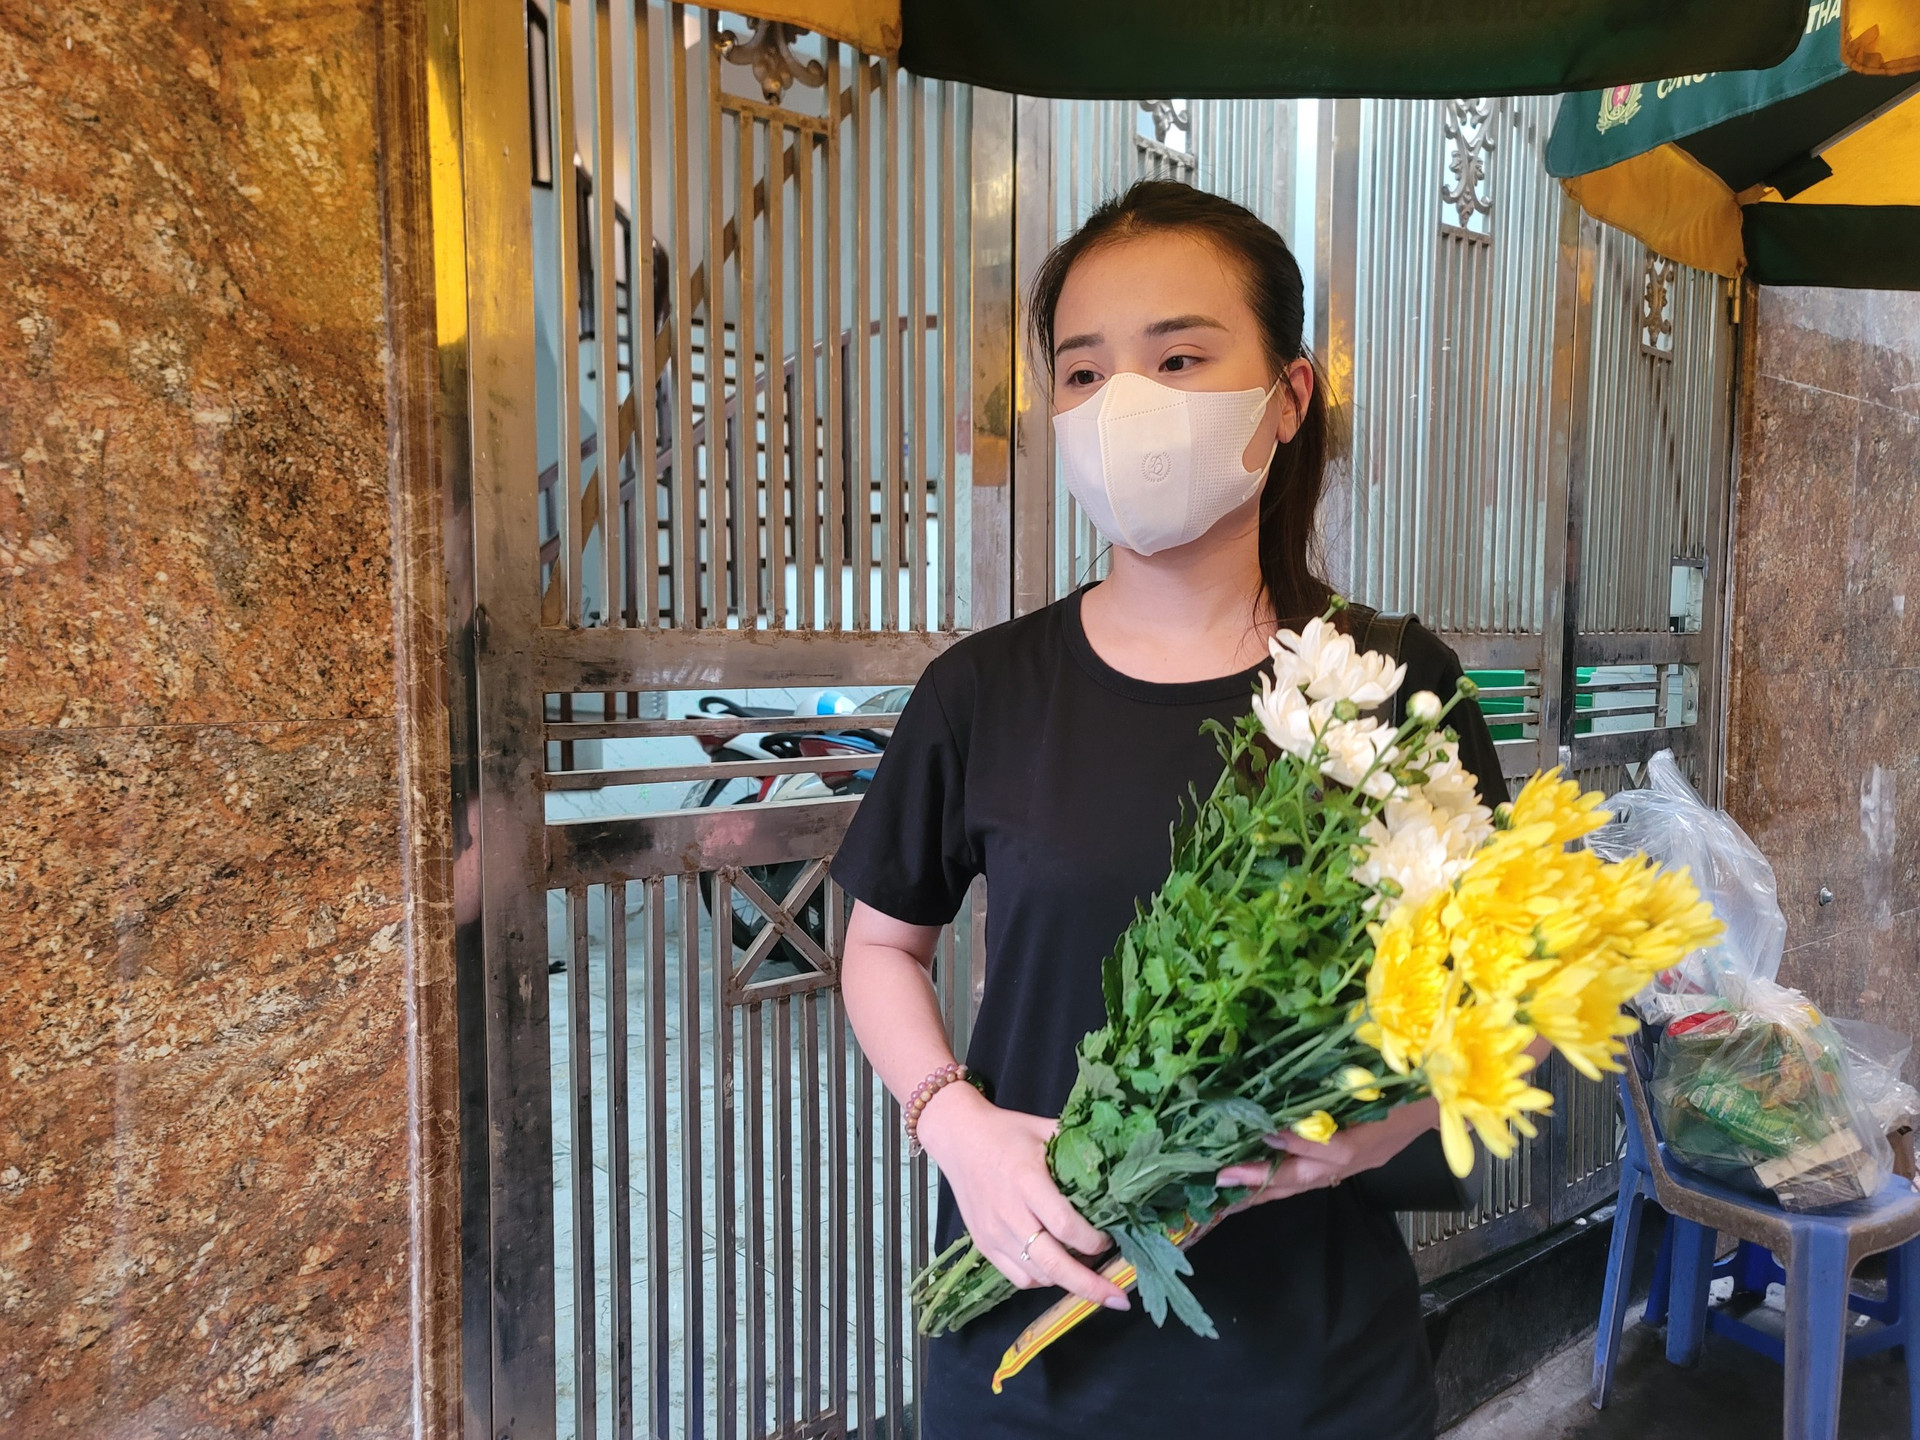 Chị Hải Ngọc (29 tuổi, ở Tây Mỗ, Từ Liêm, Hà Nội) mang hoa cúc vàng, cúc trắng đến tưởng niệm các nạn nhân cháy chung cư mini.